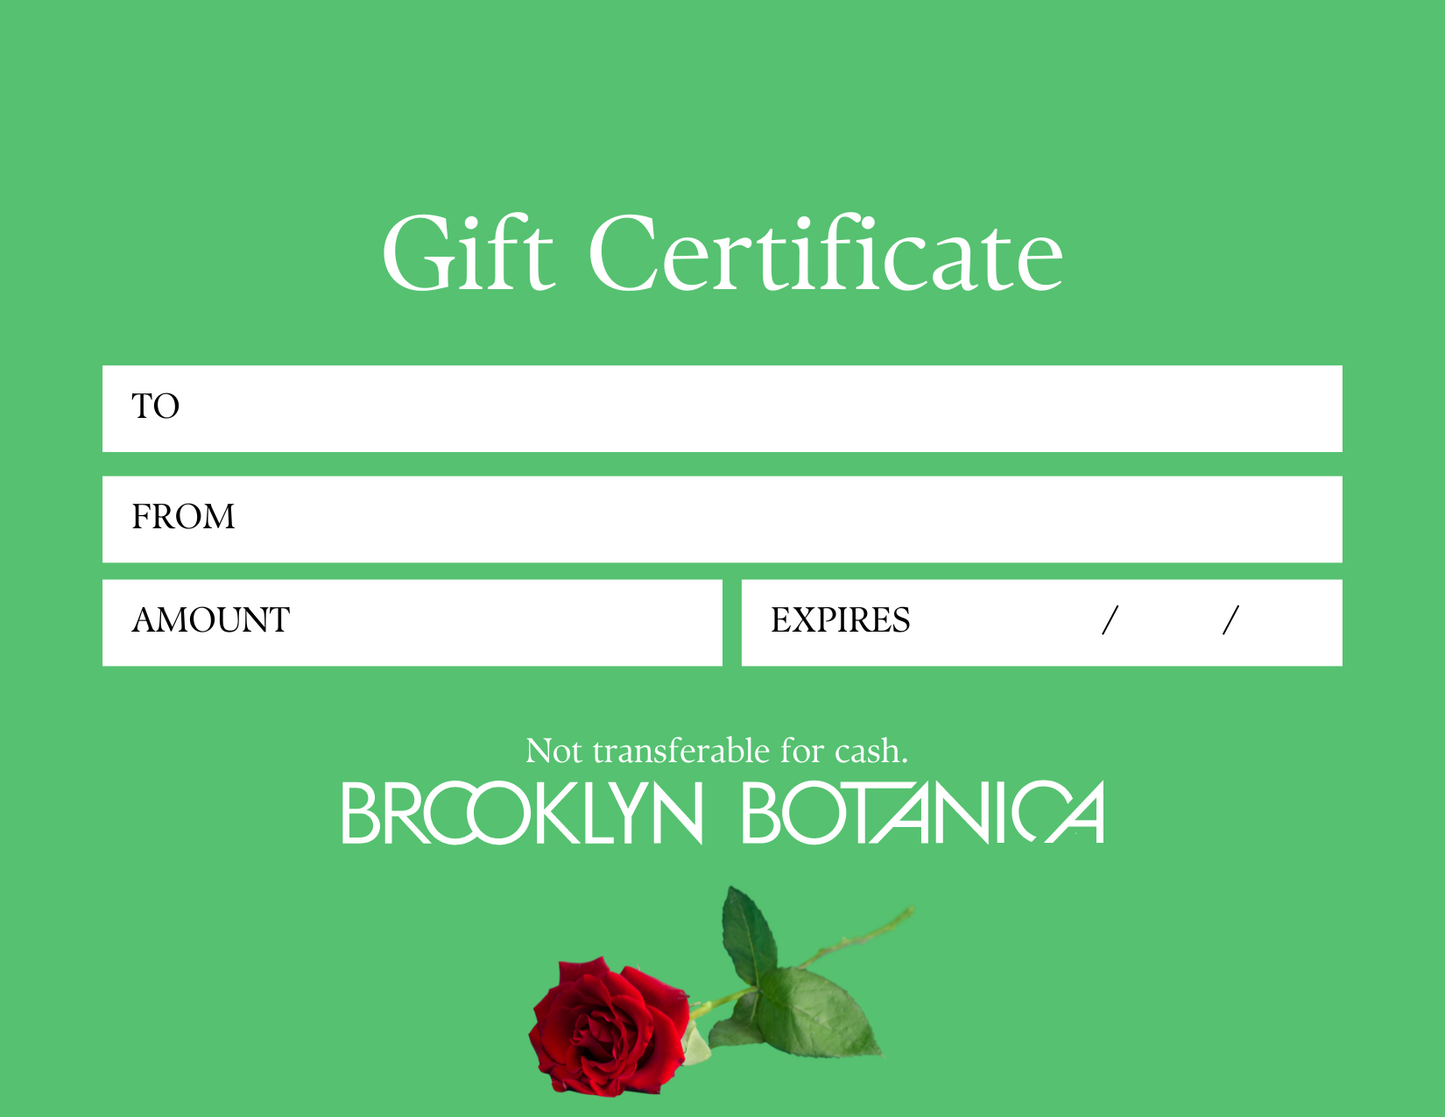 The Brooklyn Botanica Gift Card